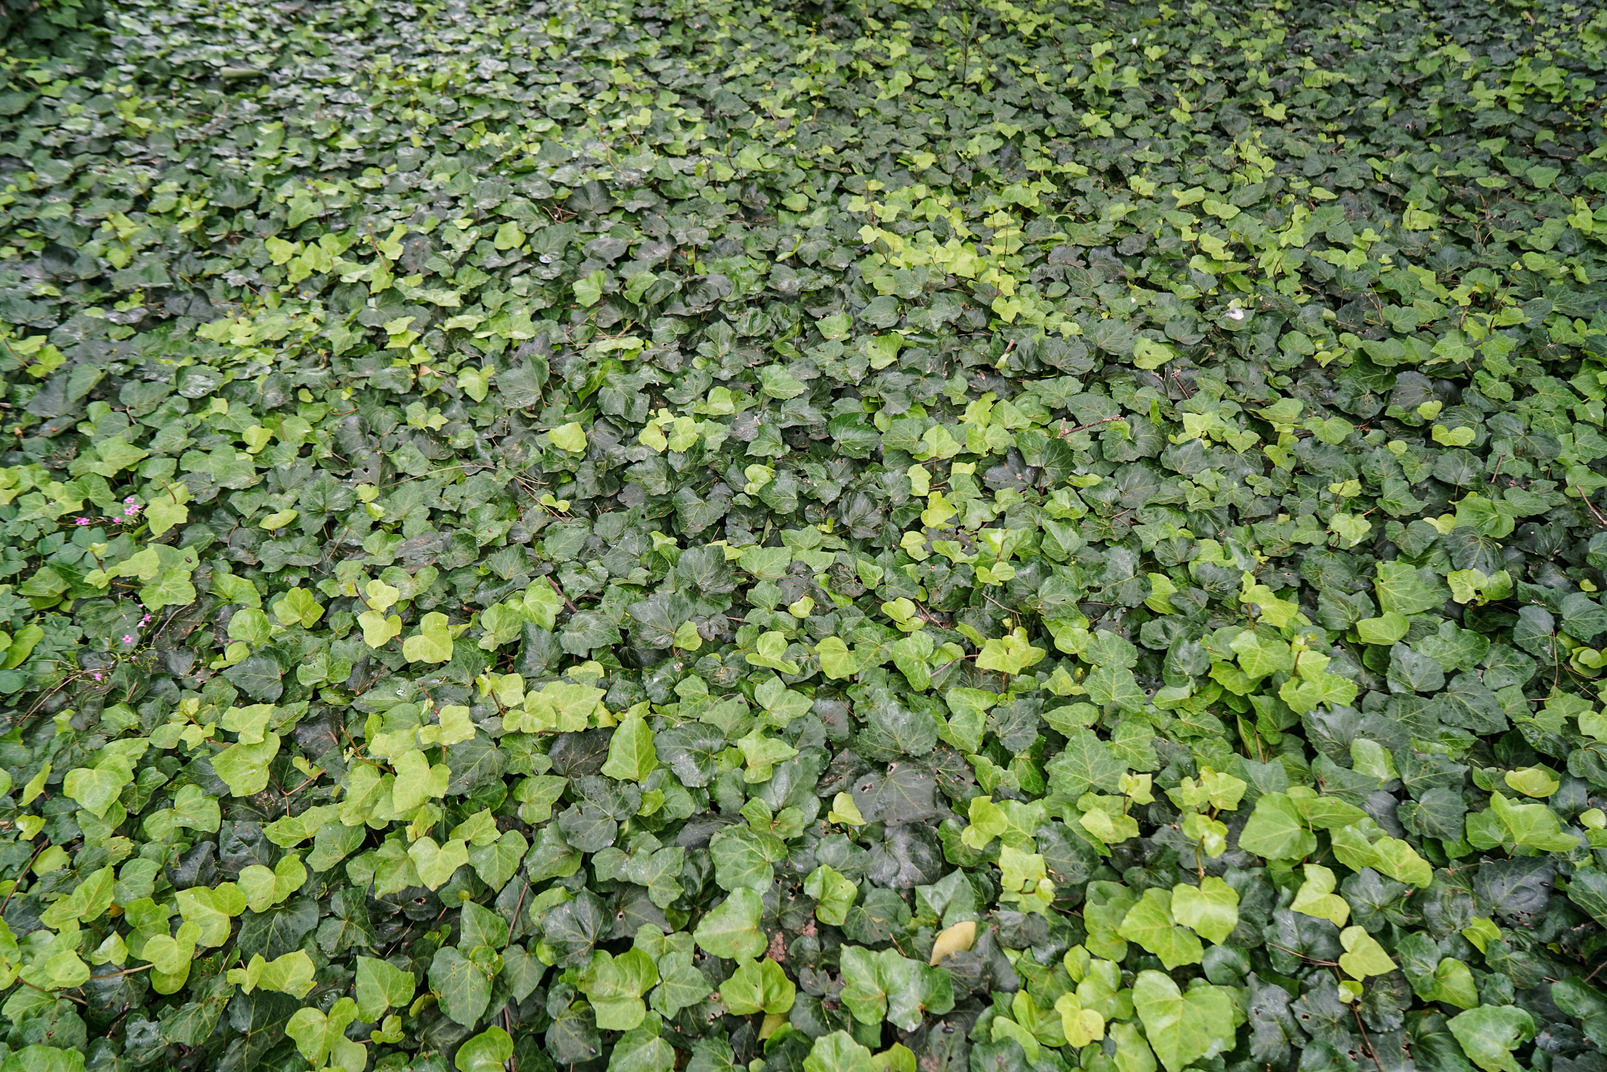 Carpet of green leaves